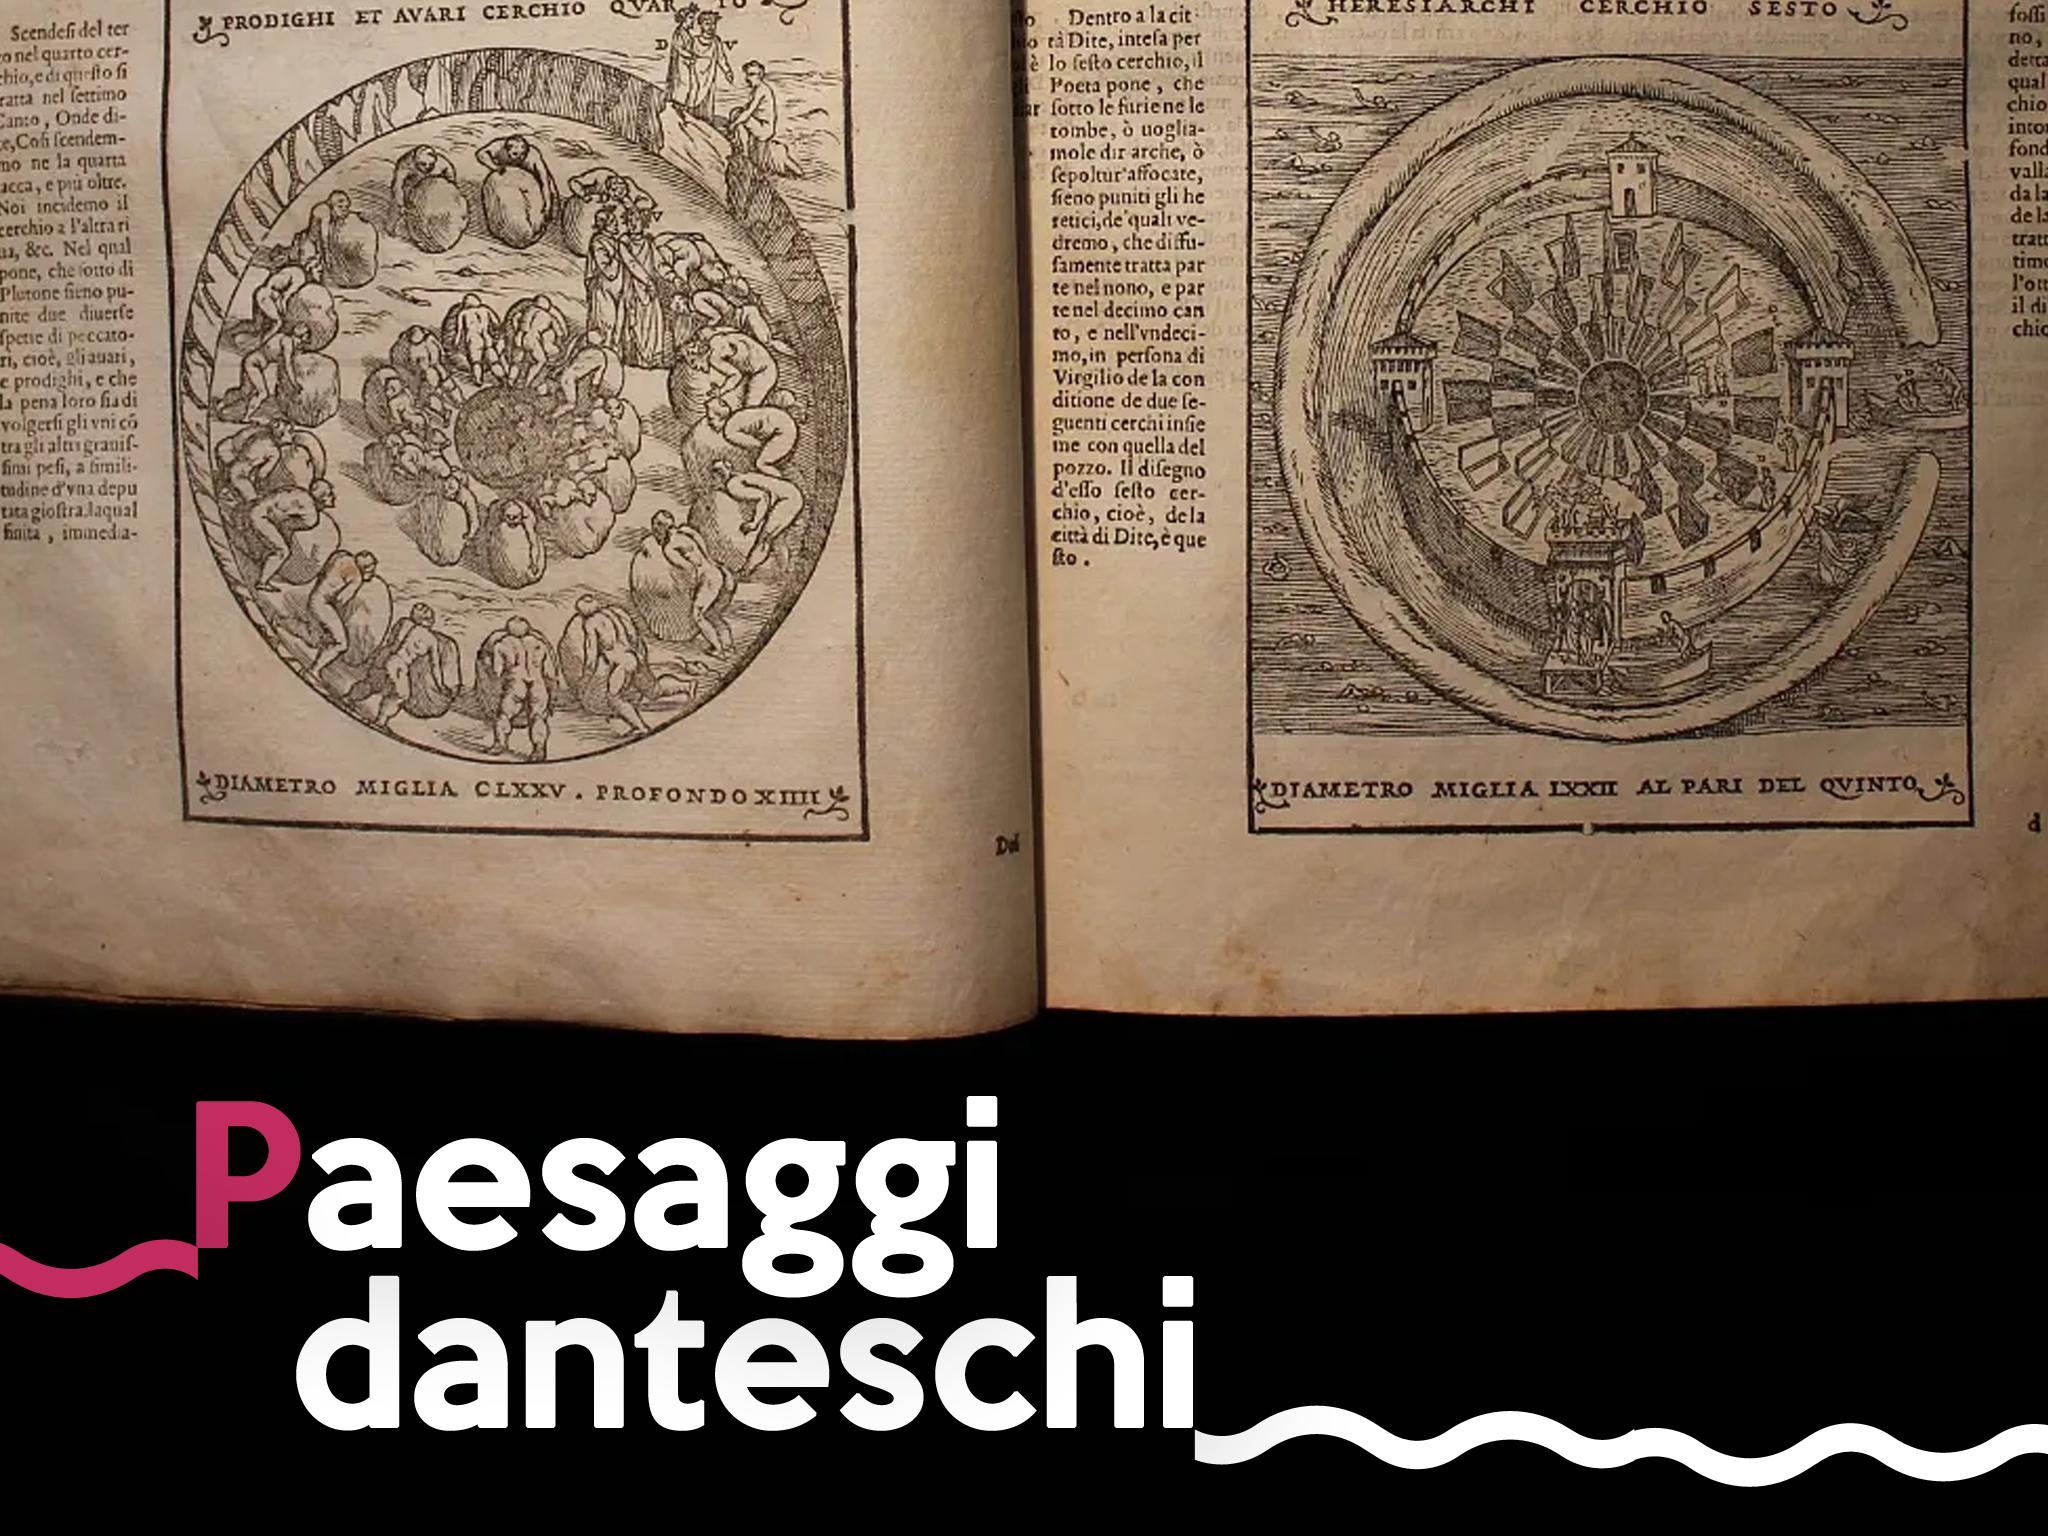 Paesaggi danteschi, a Castellabate il viaggio nella preziosa edizione del 1596 della Divina Commedia